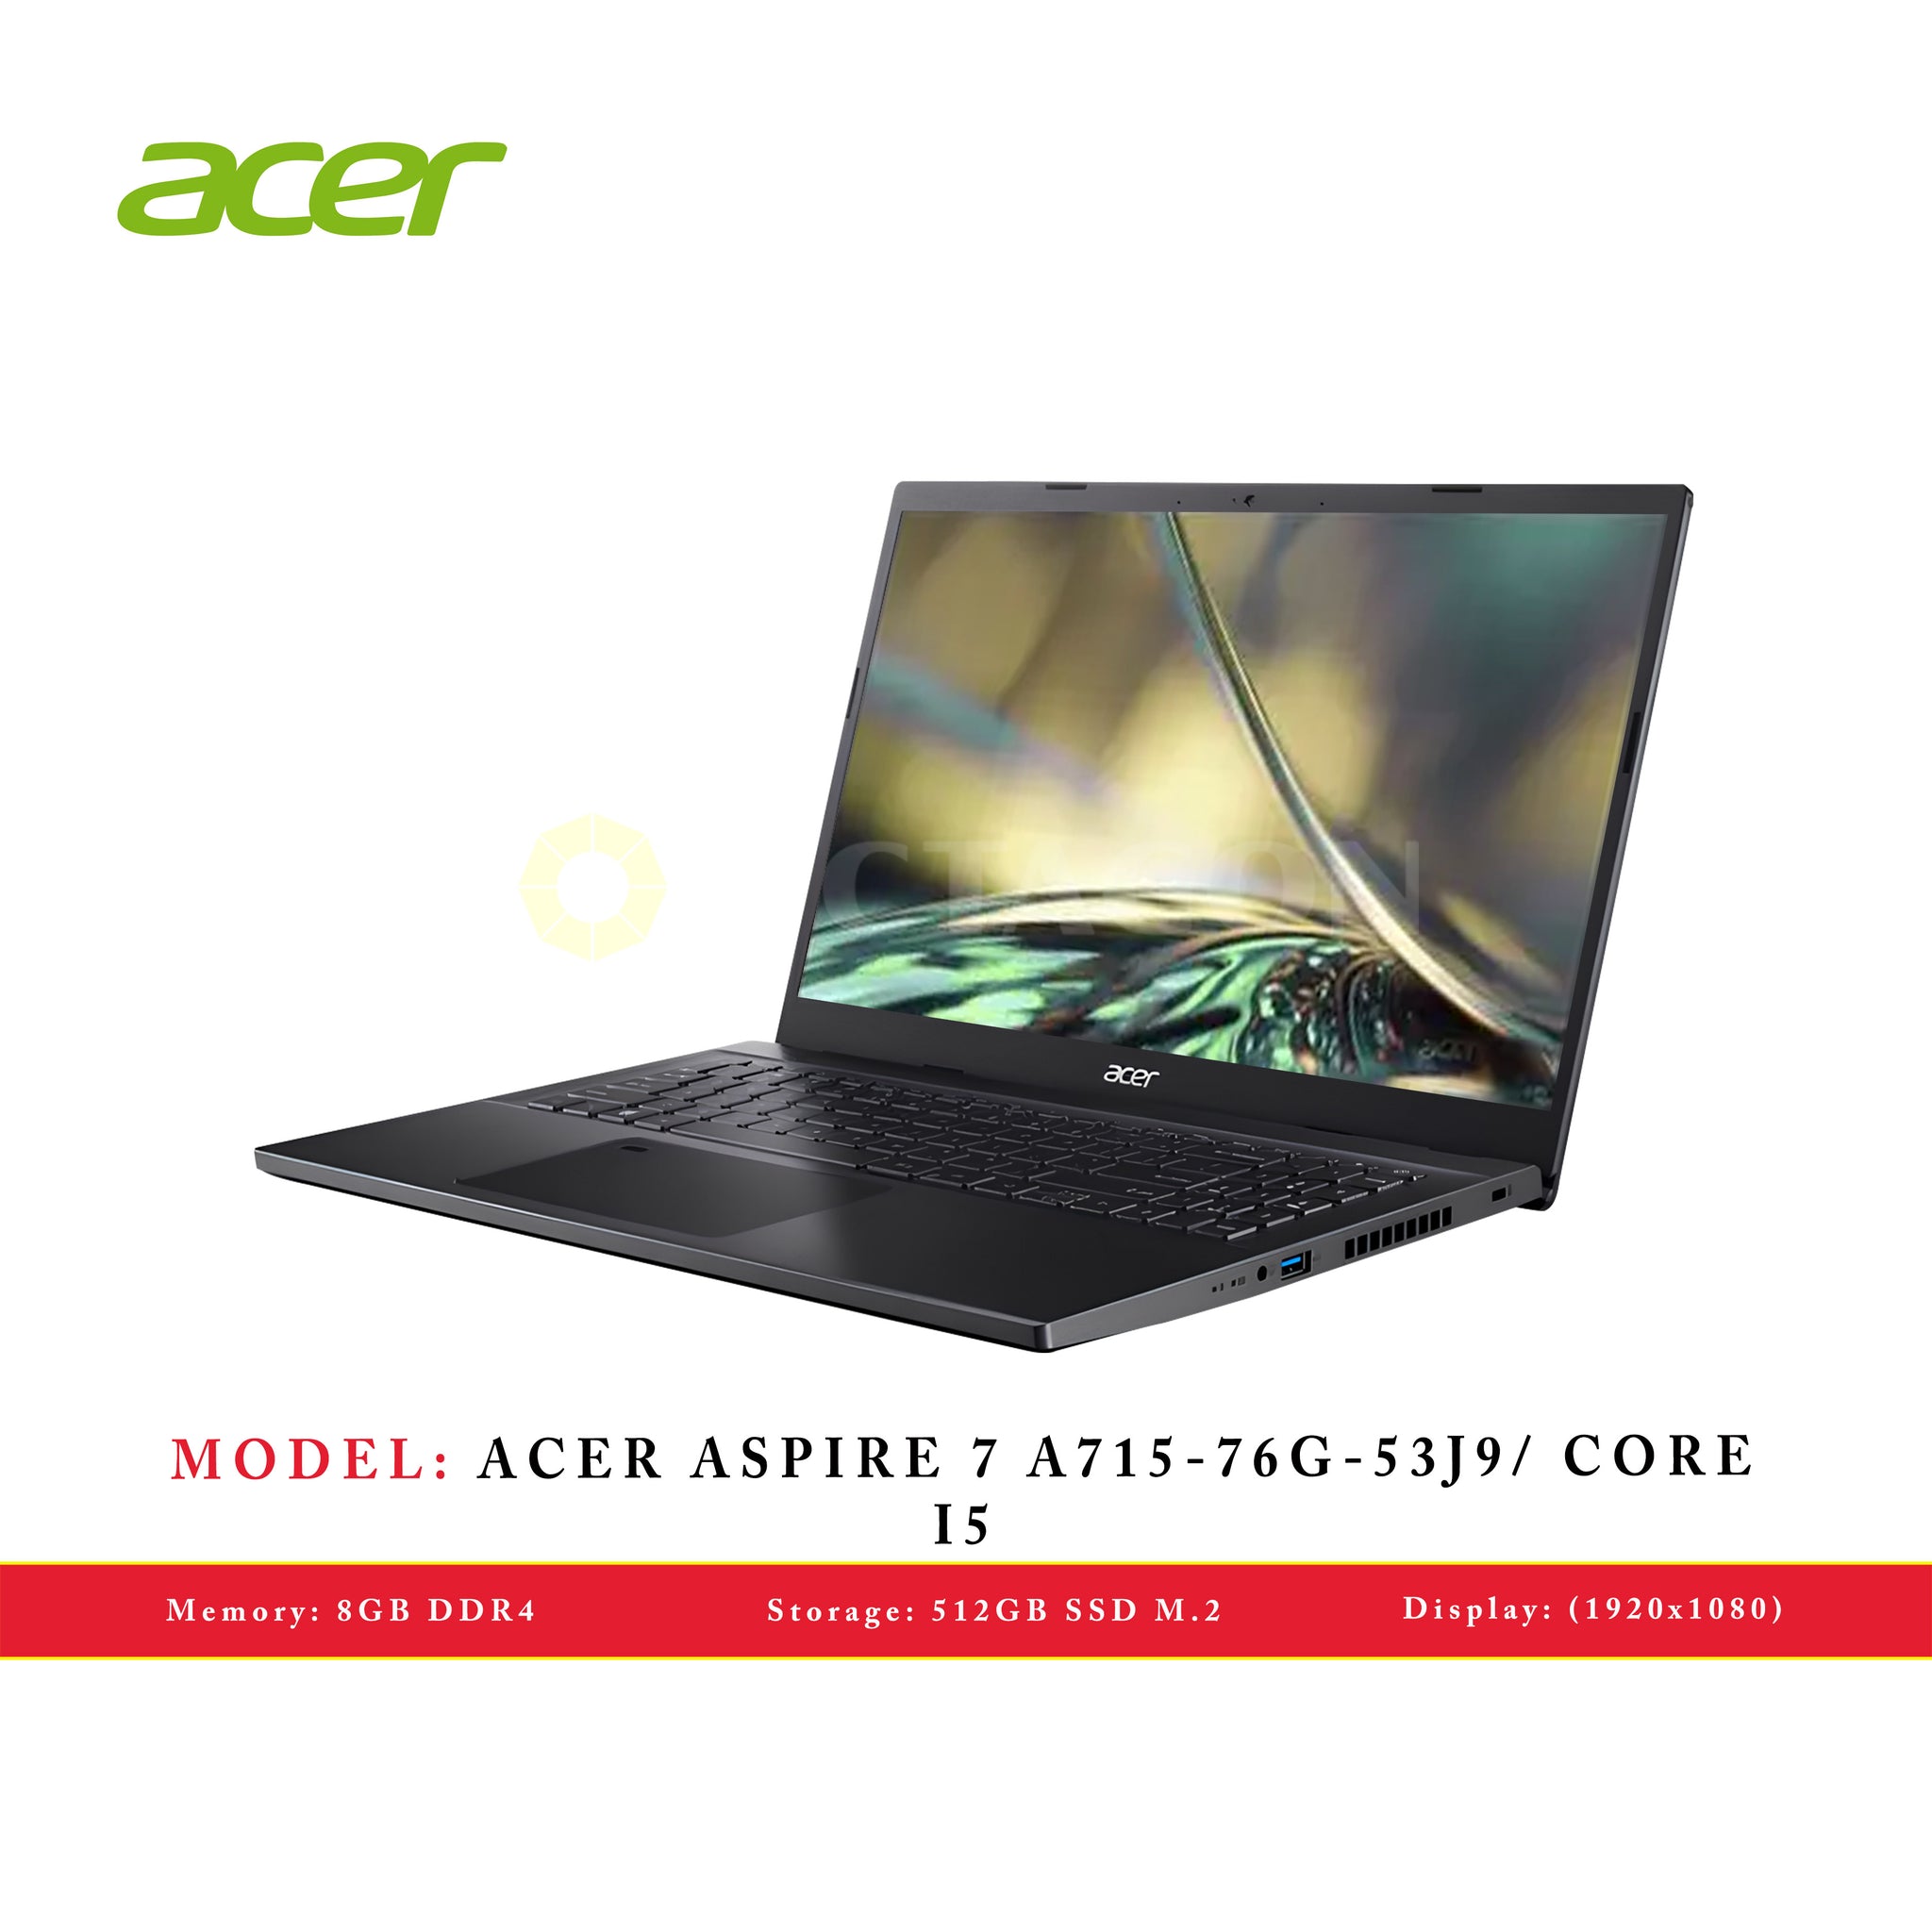 ACER ASPIRE 7 A715-76G-53J9/ CORE I5